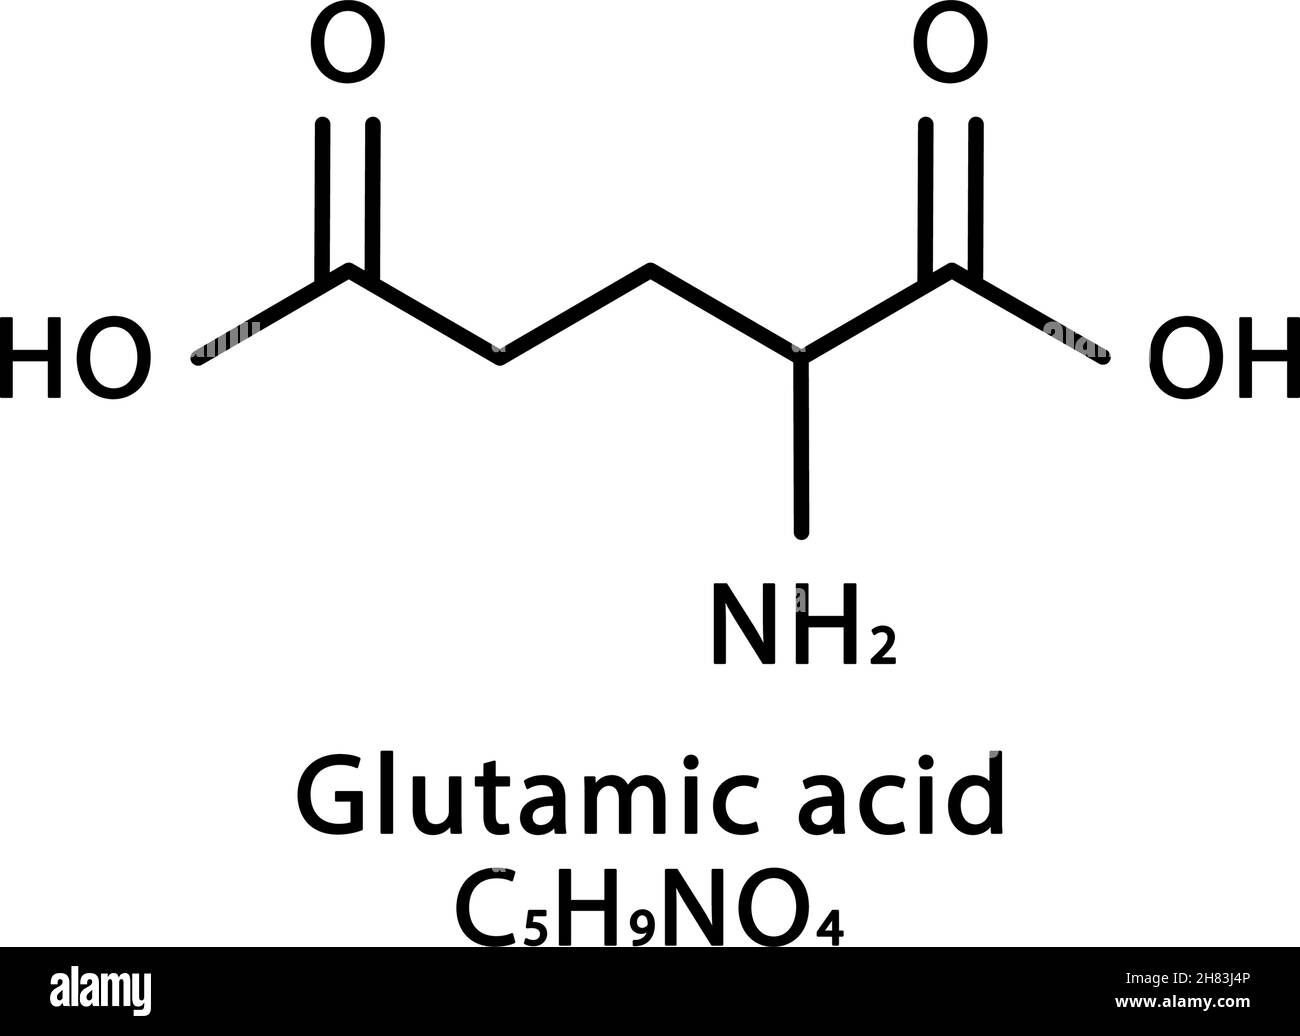 Chemistry chemical formula glutamate Banque d'images détourées - Alamy